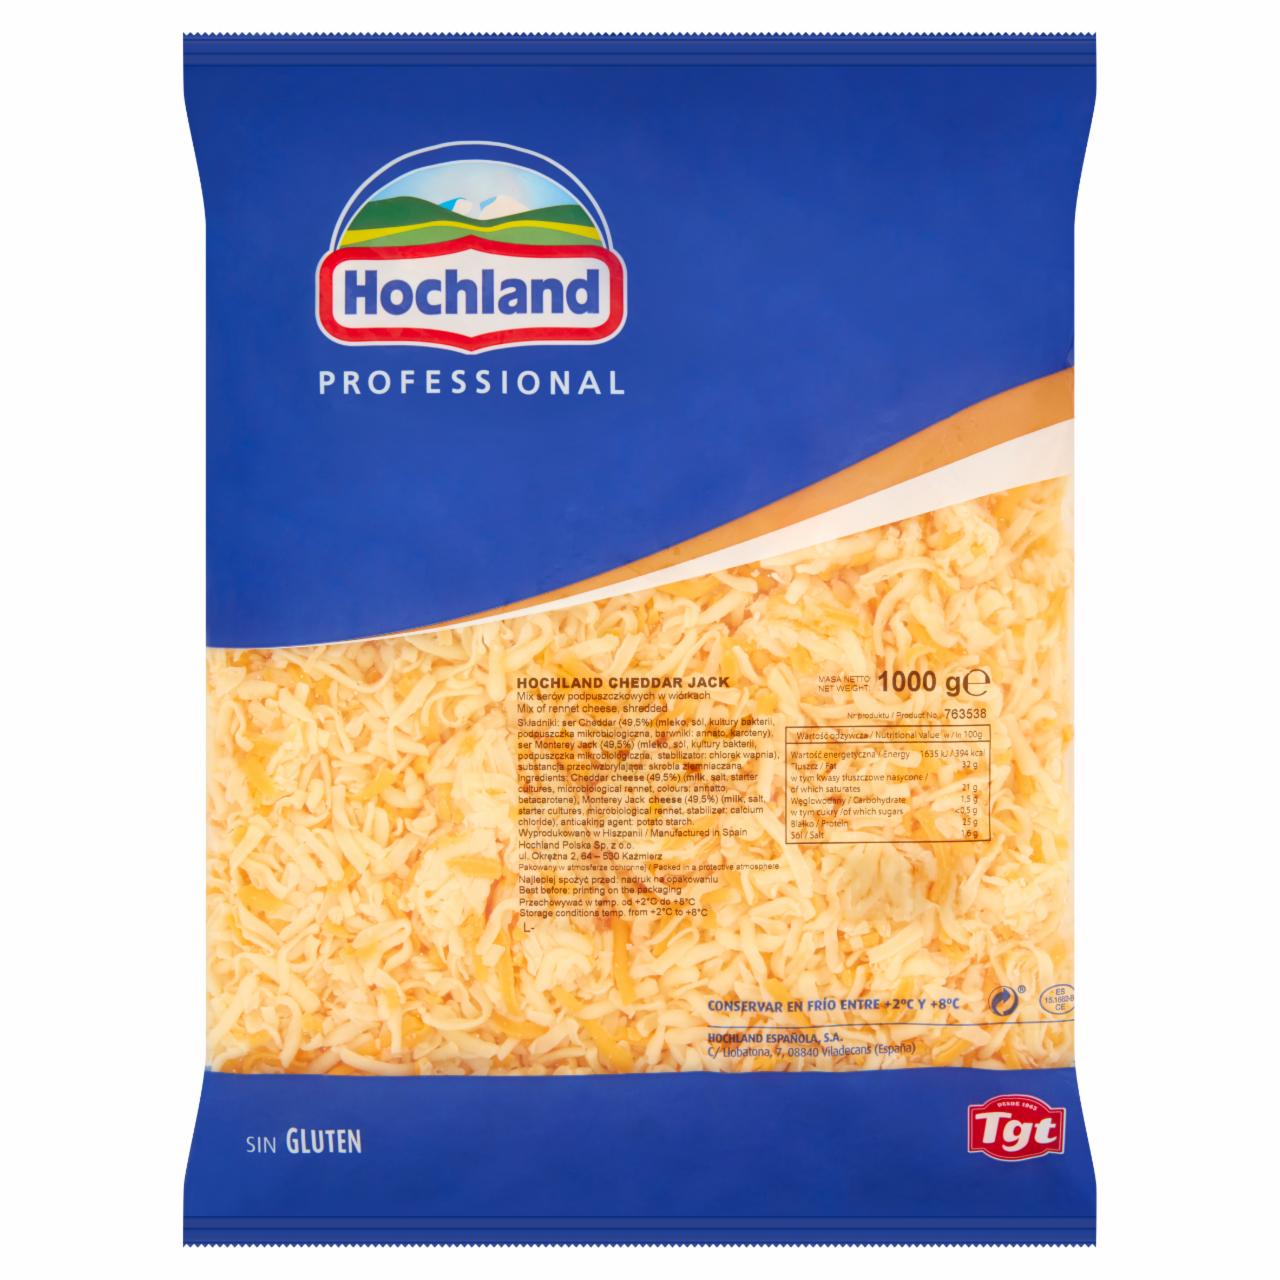 Zdjęcia - Hochland Professional Cheddar Jack Mix serów podpuszczkowych w wiórkach 1000 g